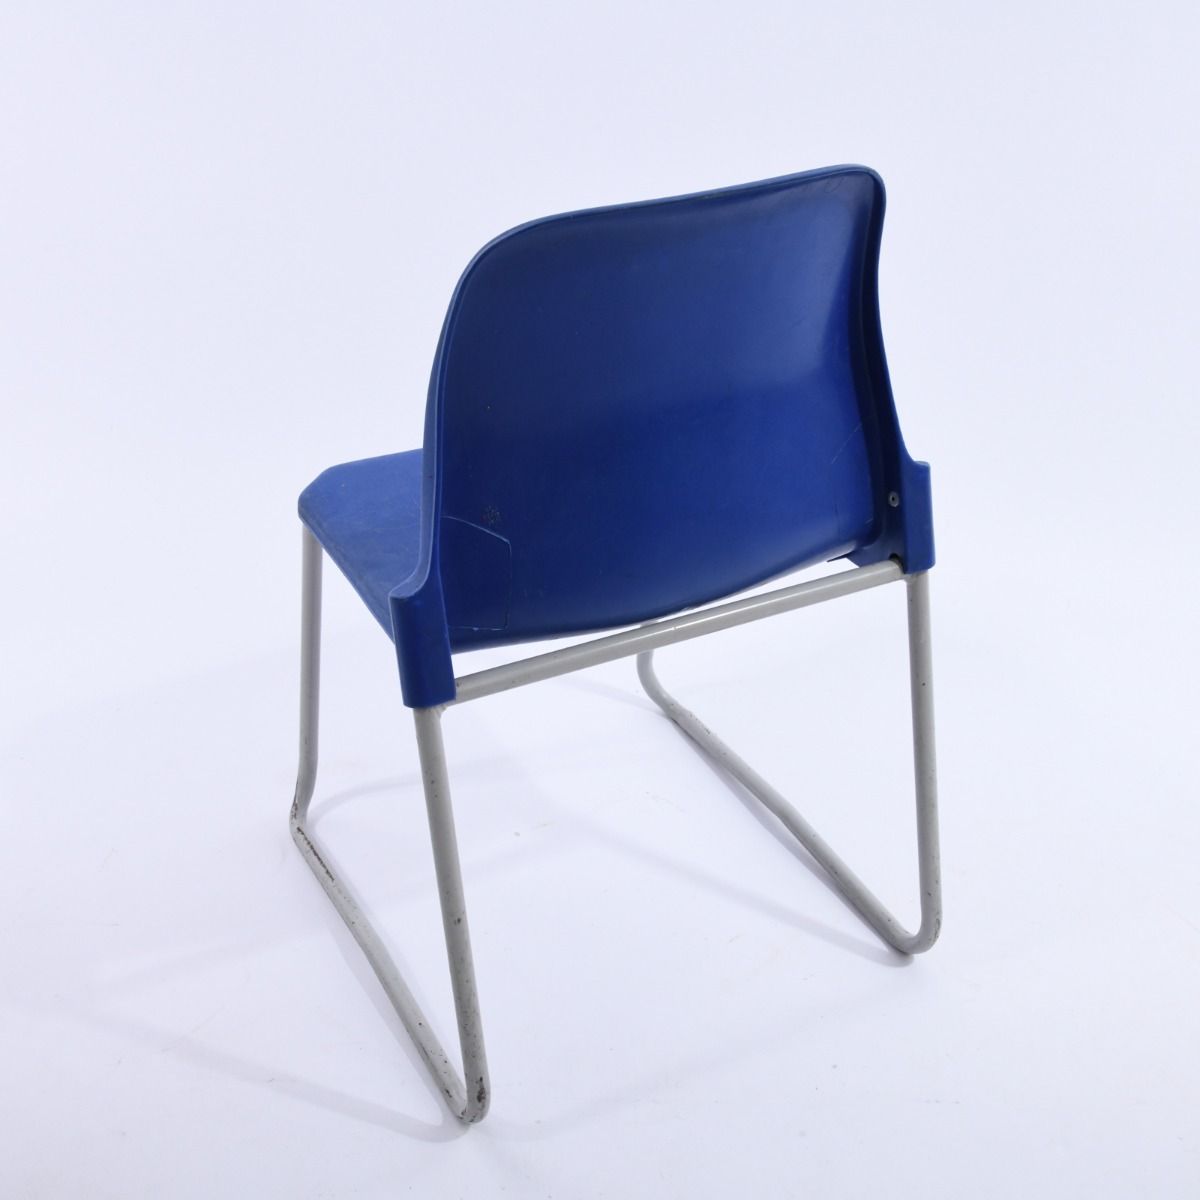 1990s Stackable Children's Blue School Chairs